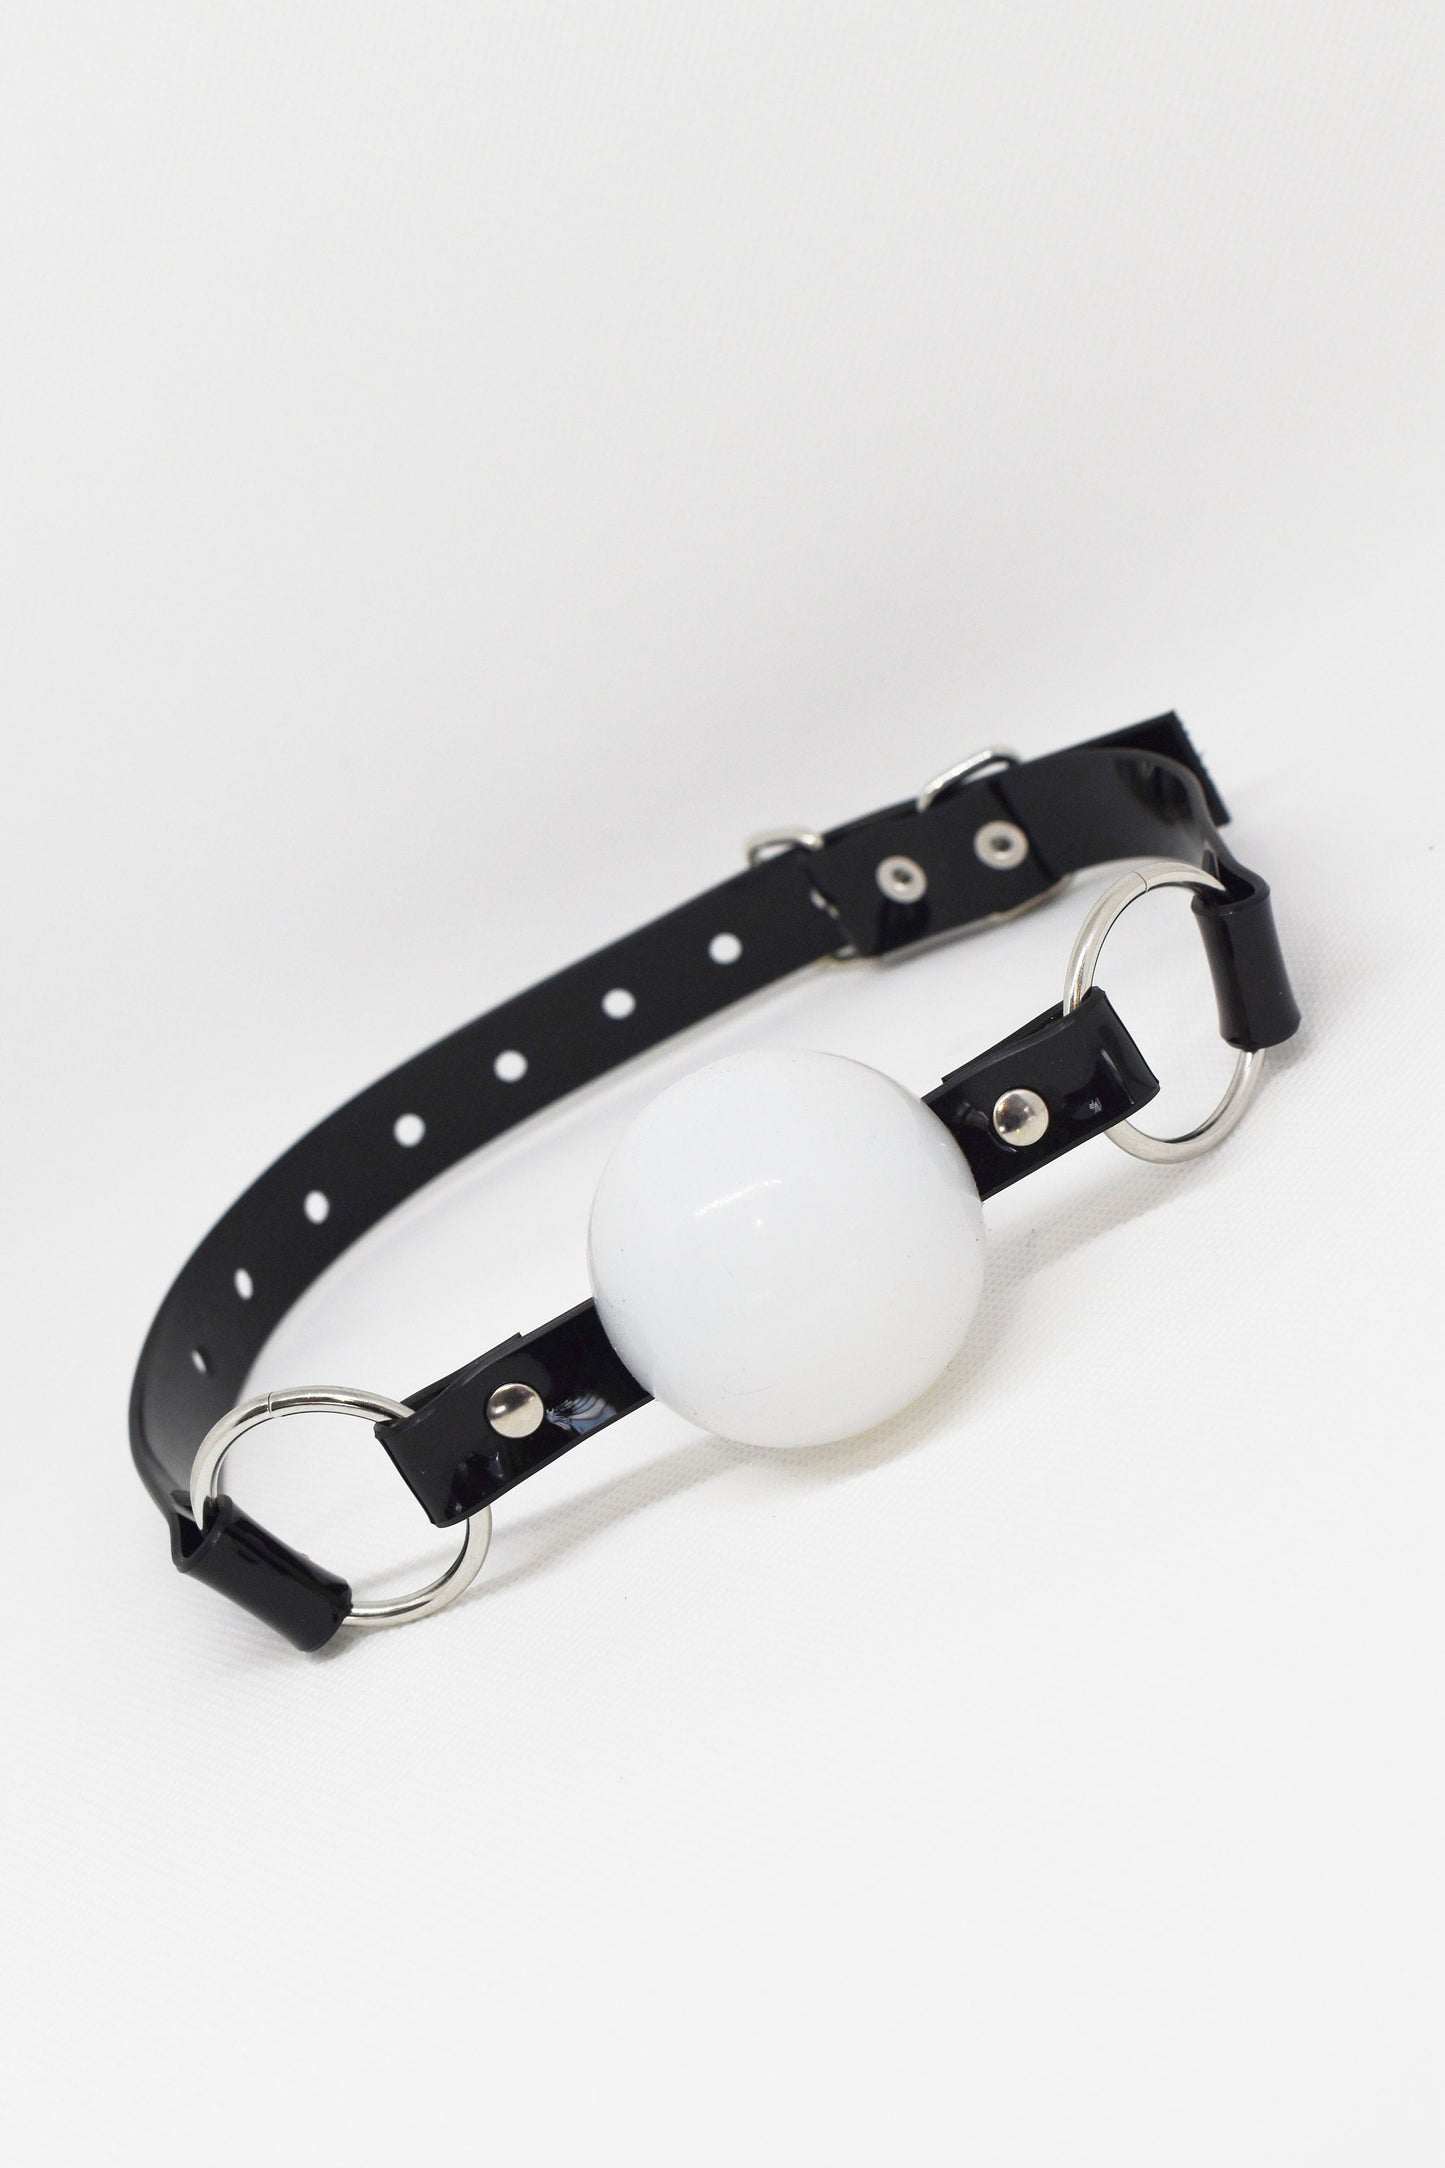 White Silicon Ball Gag with PVC black strap -Lockable -Vegan